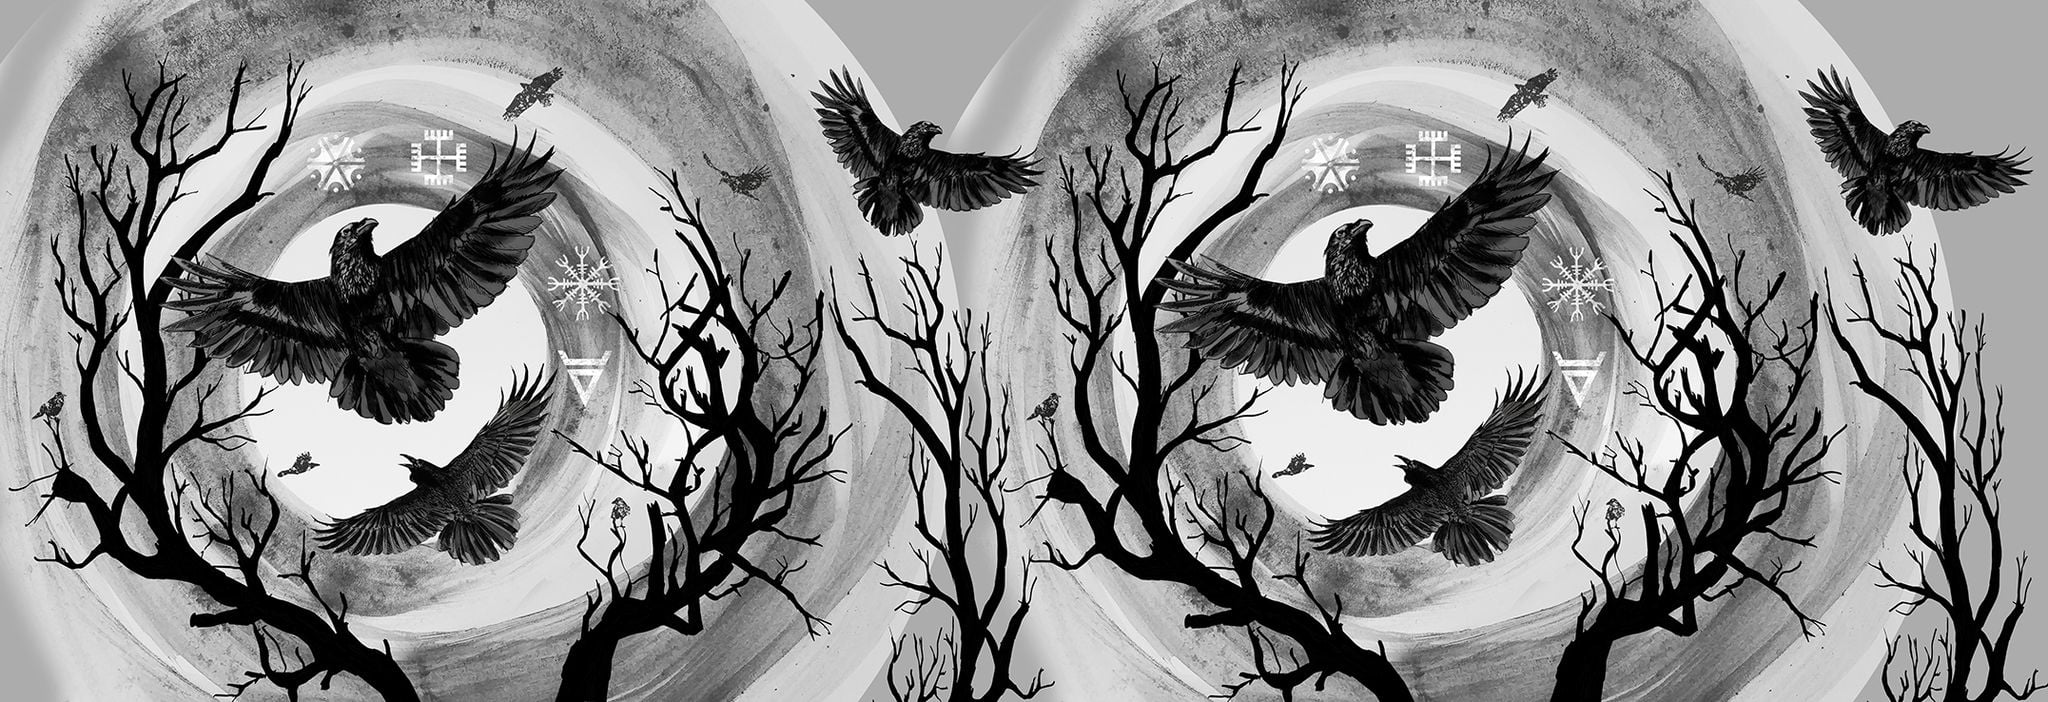 Tragetuch Wild Slings Les corbeaux Corbeaux de l’orage La nuit (Leinen) Image